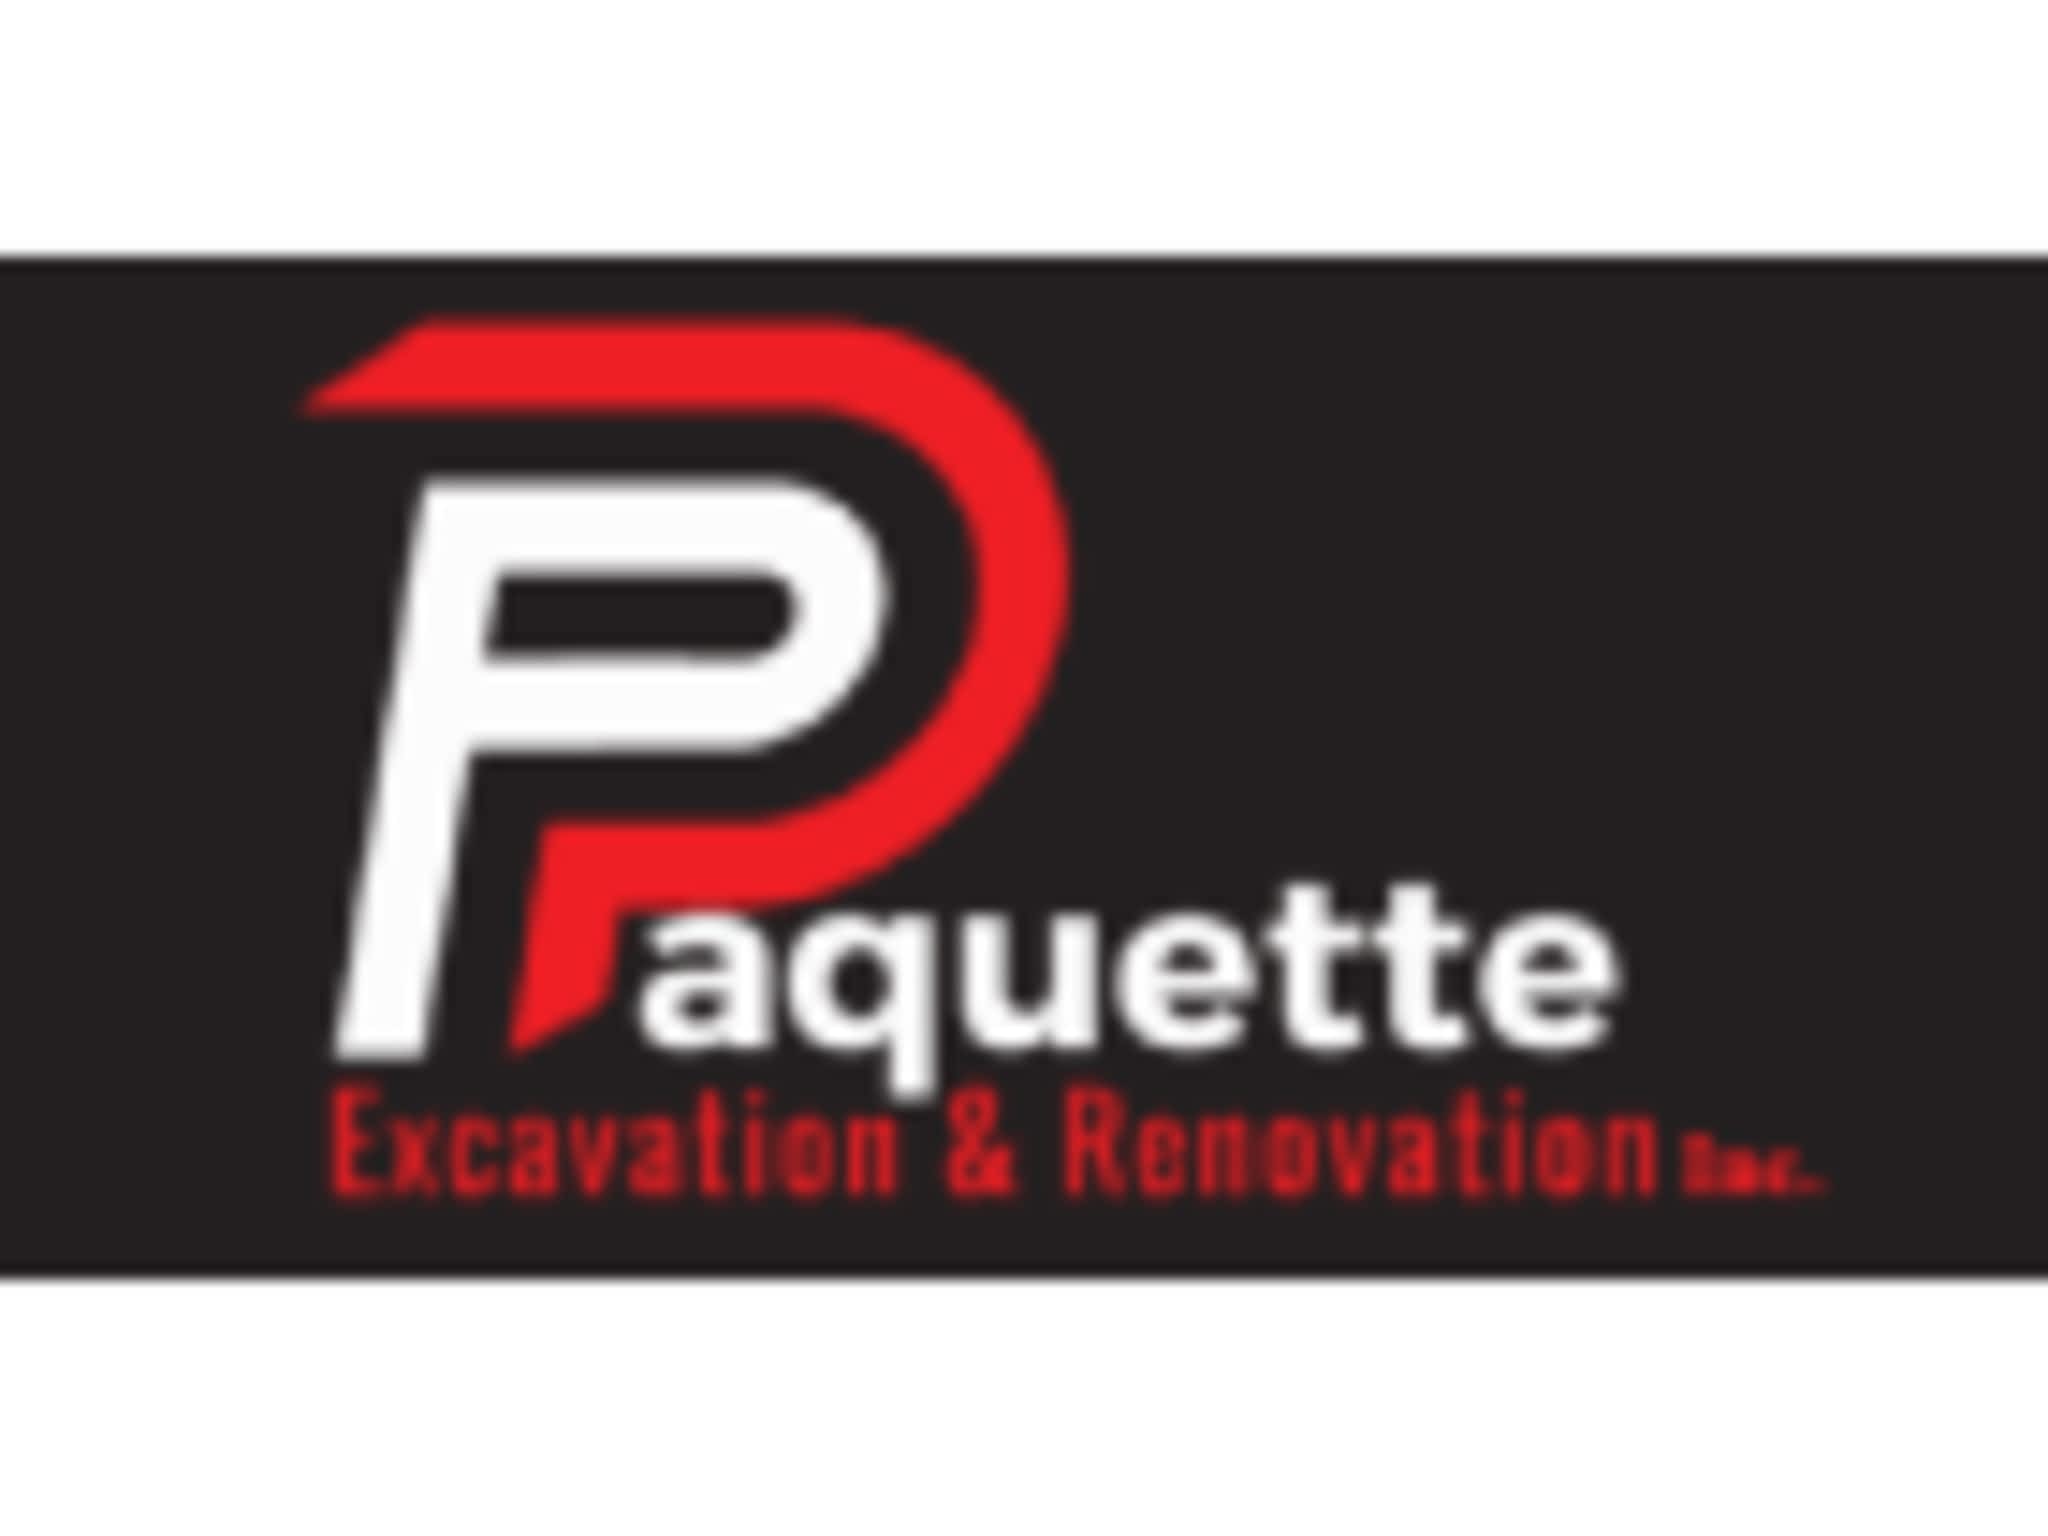 photo Paquette Excavation & Renovation